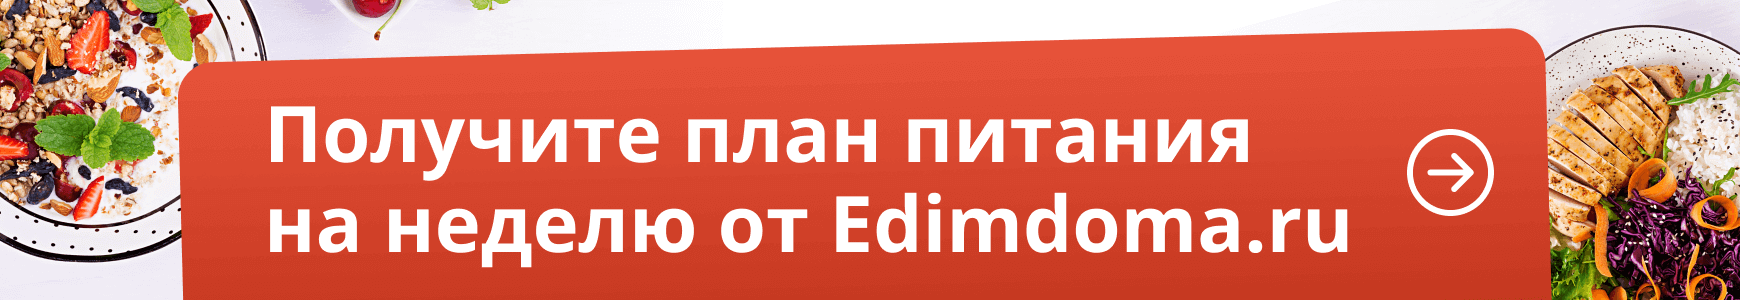 Получите план питания на неделю от Edimdoma.ru